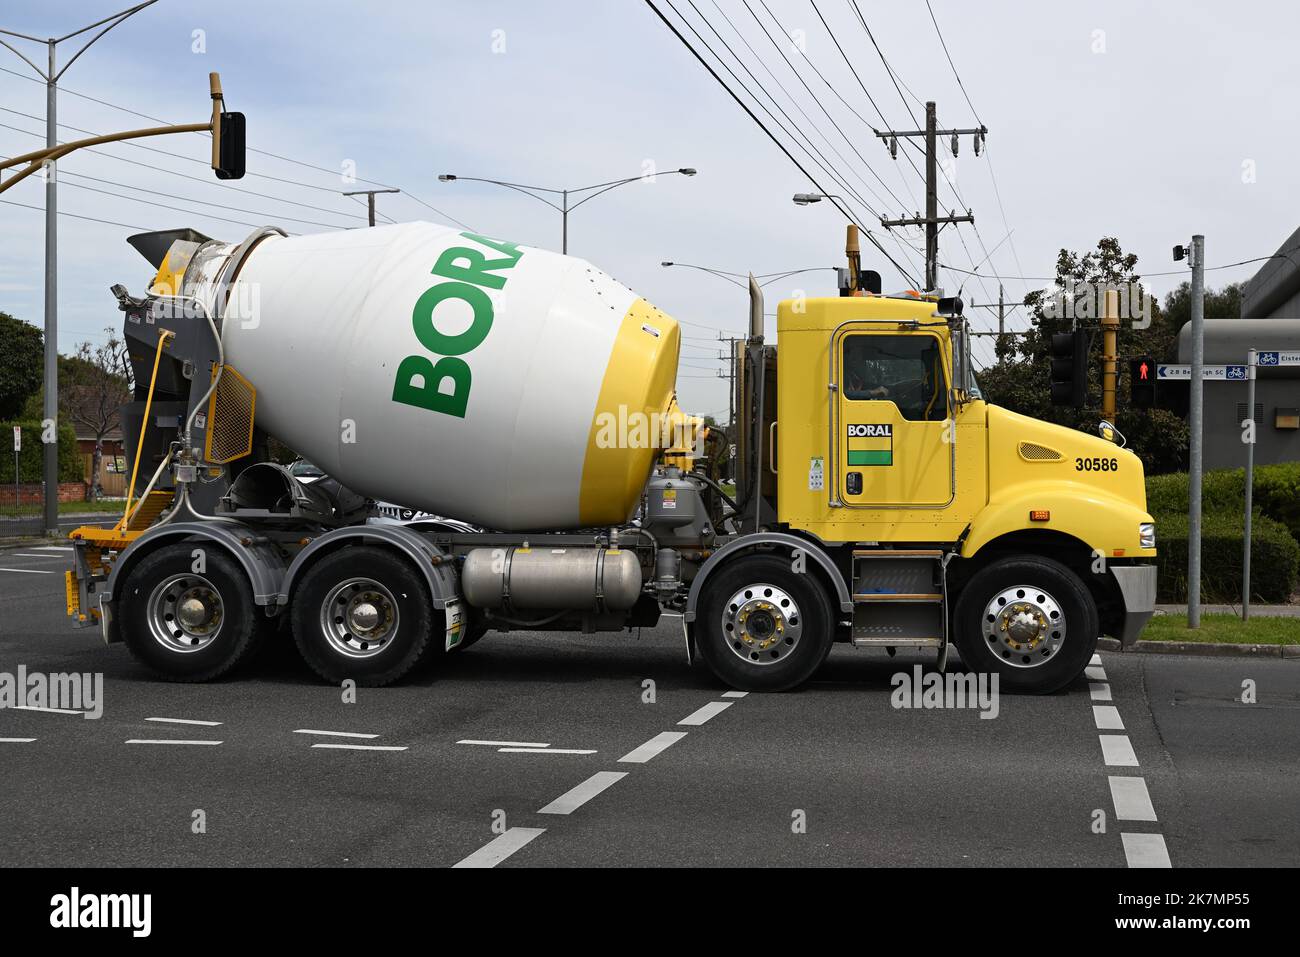 Seite eines gelben, weißen und grünen Boral-Zementmischers, der die North Rd in einem Vorort von Melbourne abbiegt Stockfoto